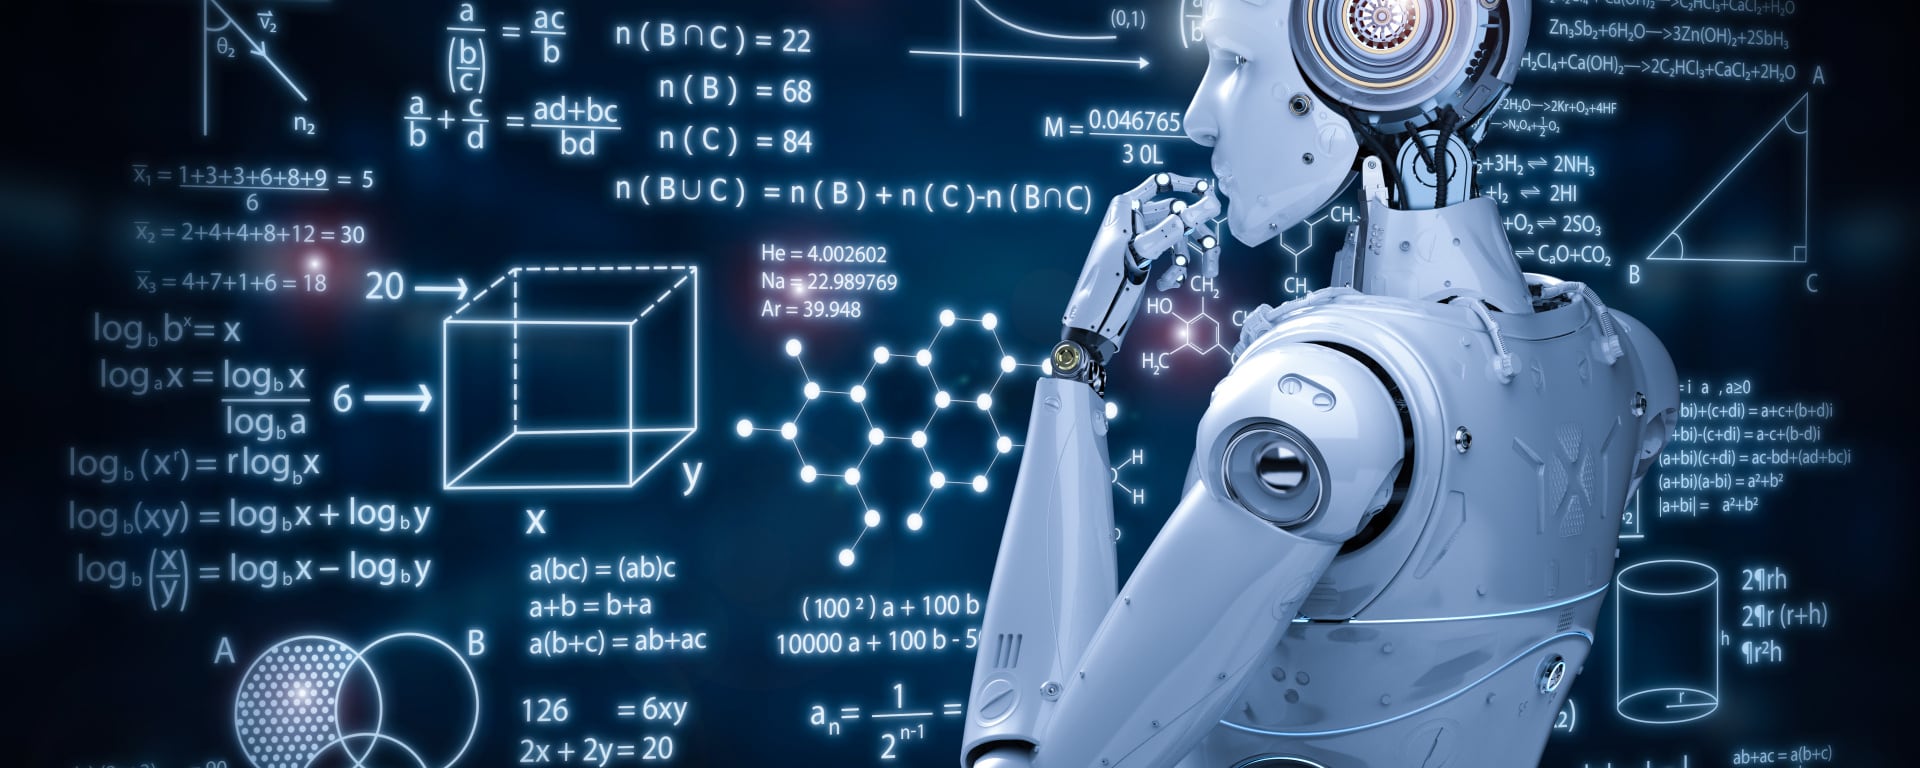 Inteligencia Artificial y Machine Learning transforman el ecosistema fintech